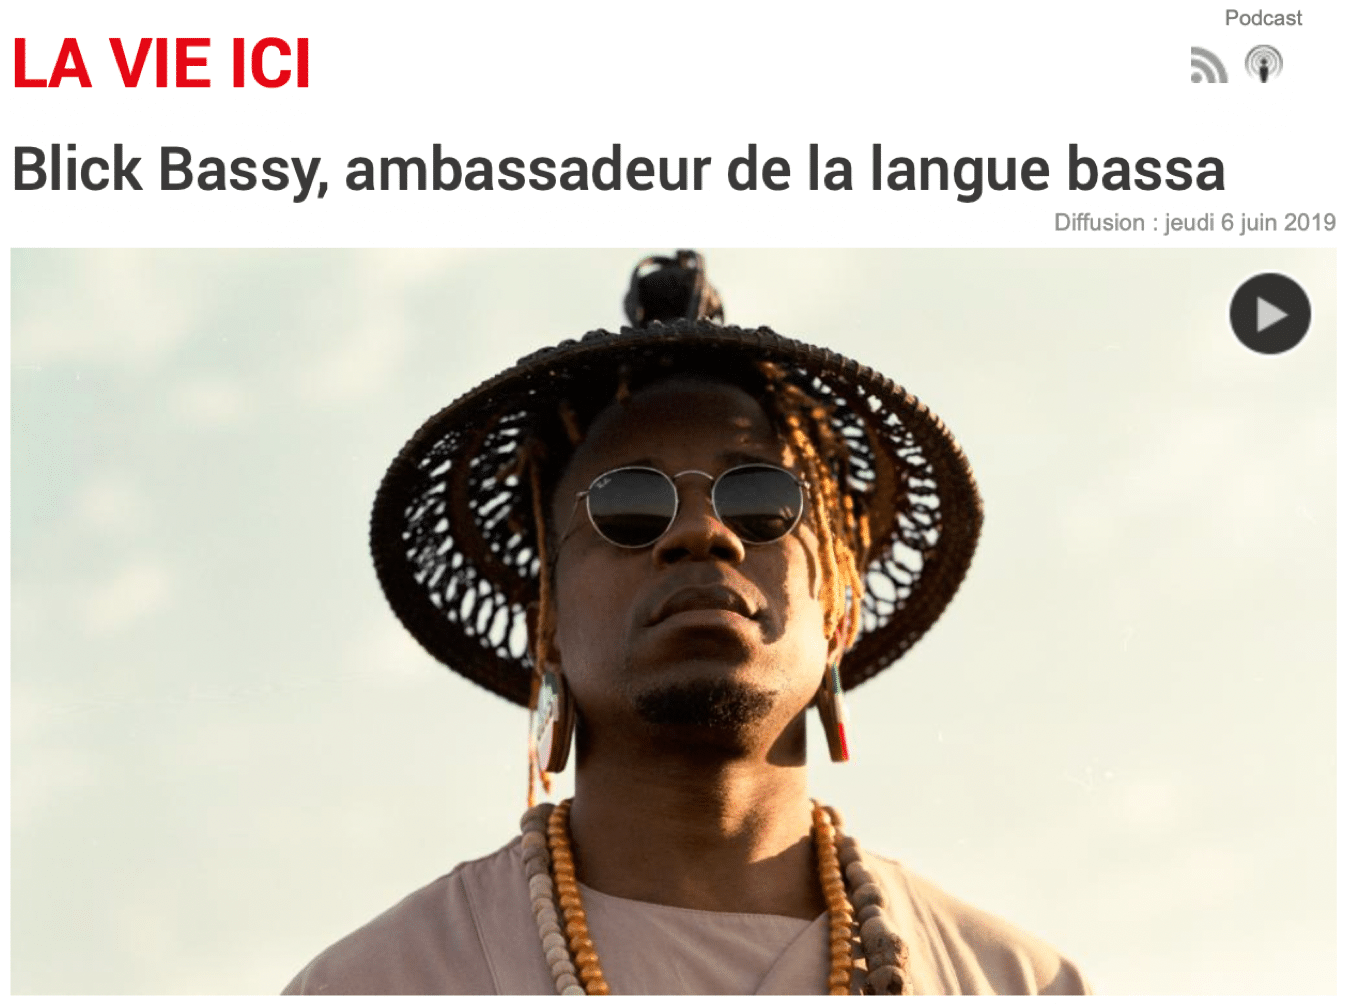 Blick Bassy, ambassadeur de la langue bassa